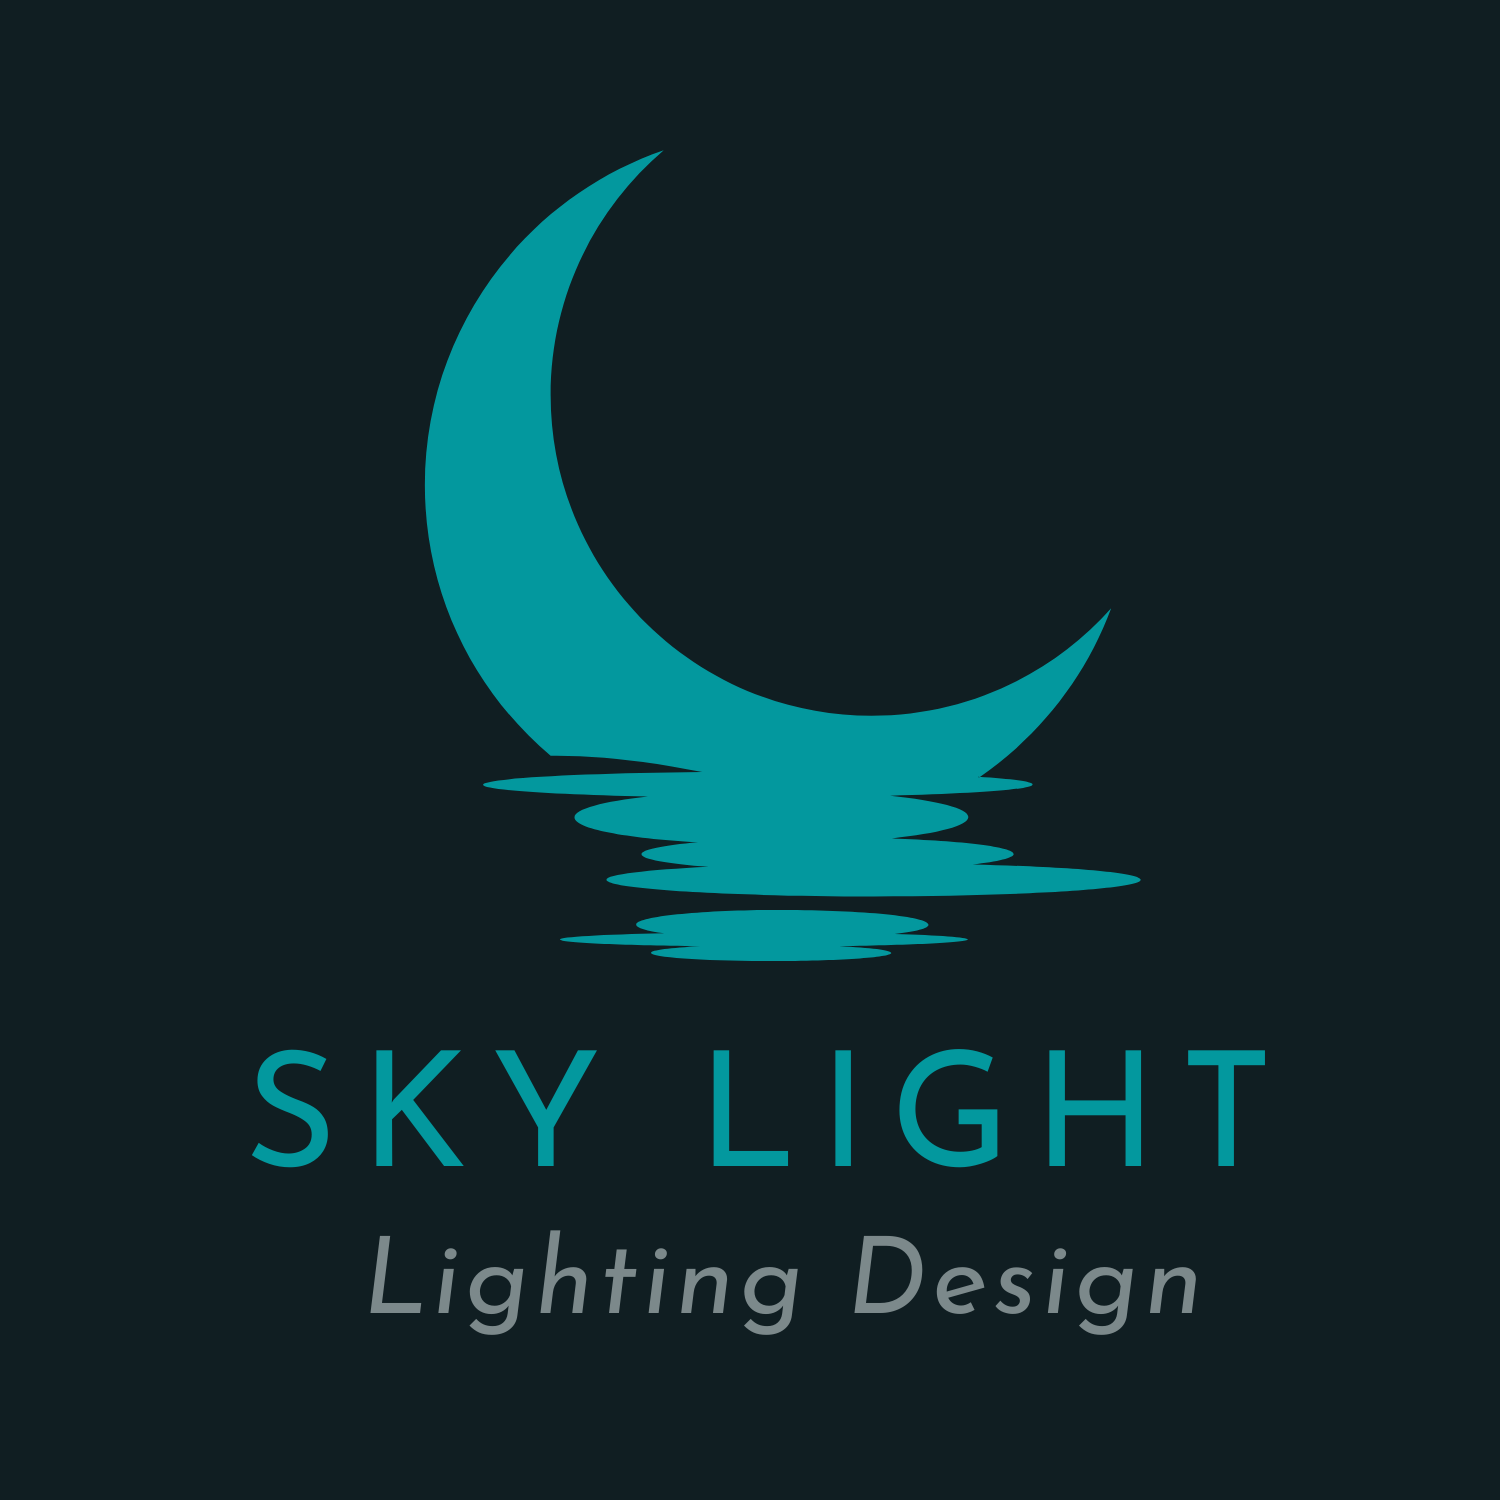 Sky Bento Design